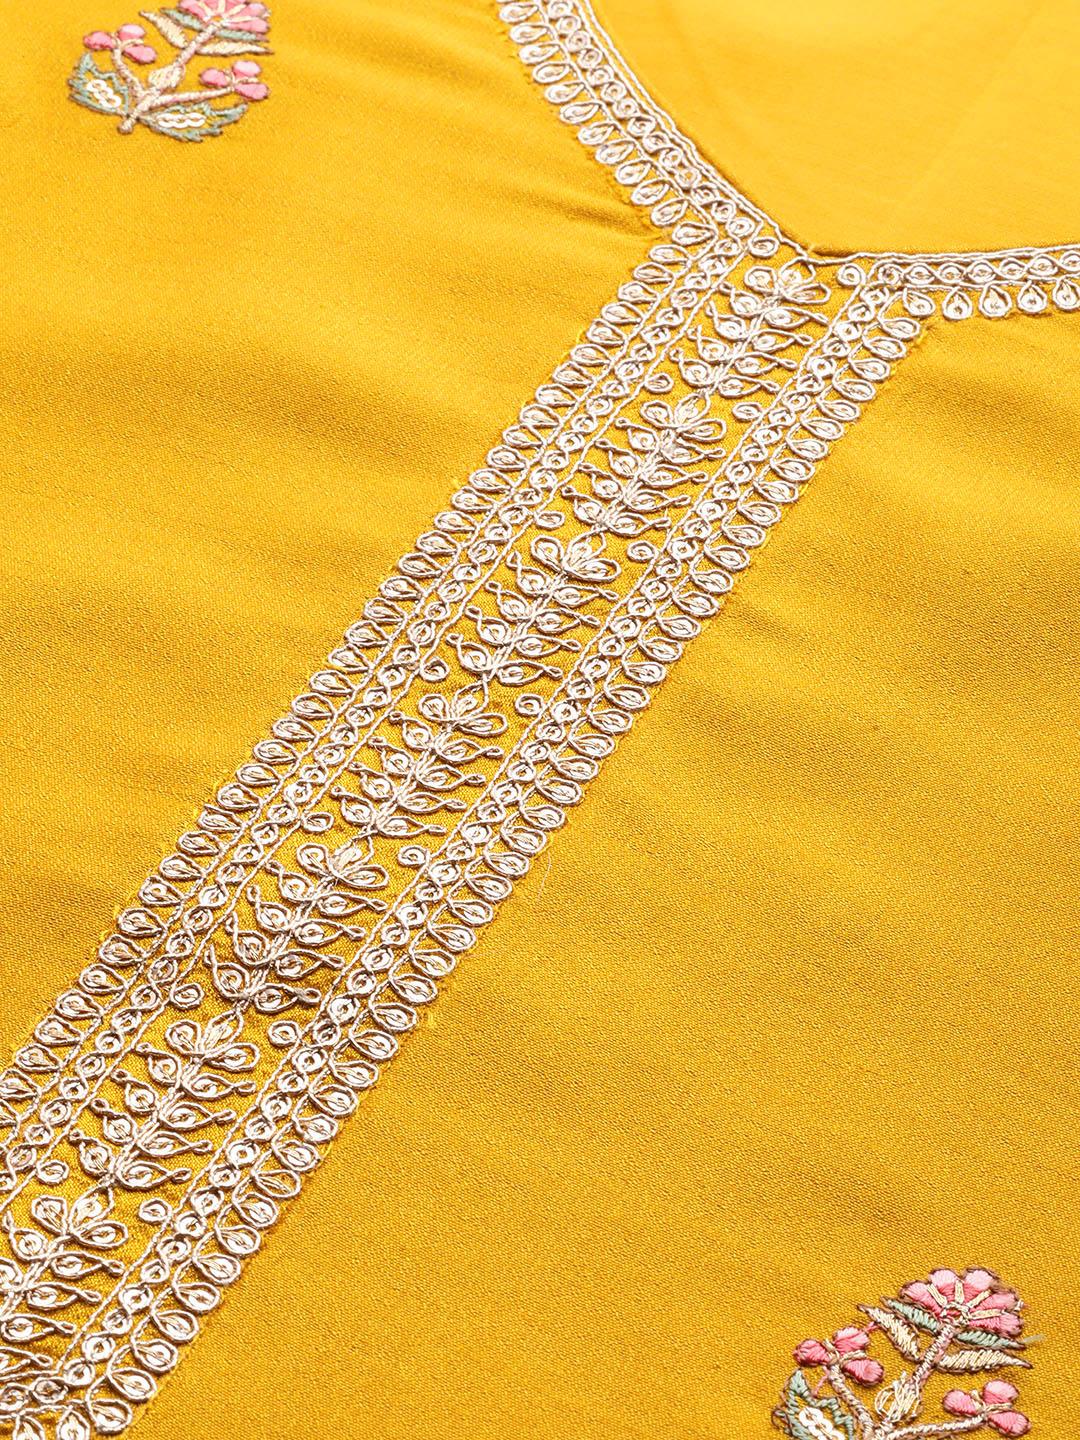 Mustard Embroidered Silk Straight Kurta - Libas